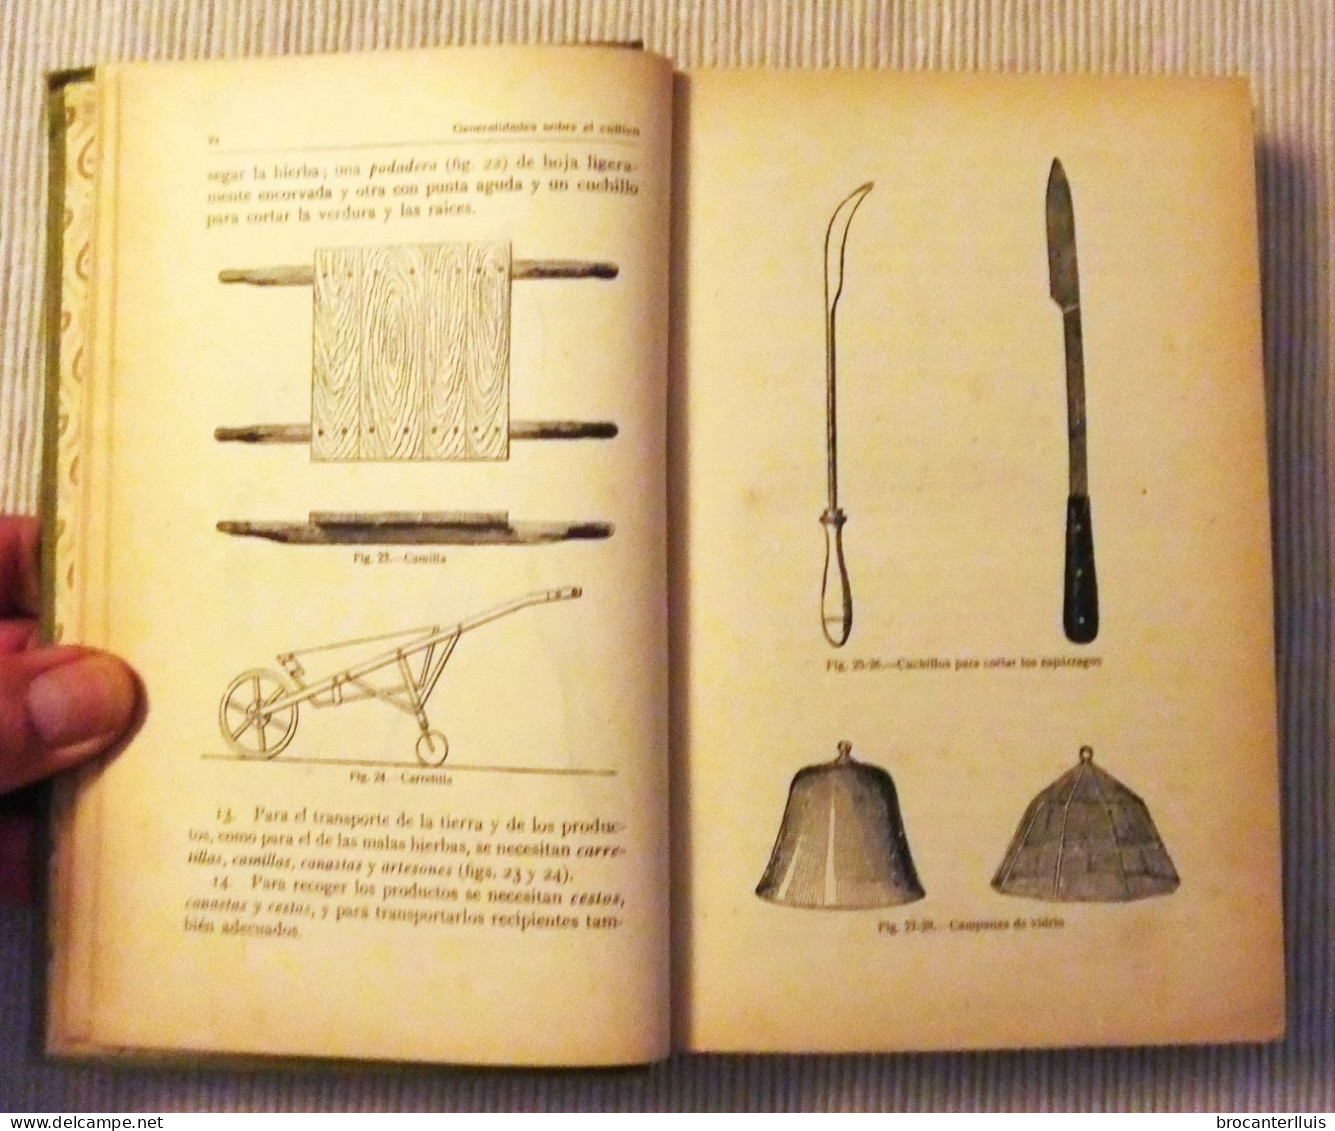 MANUAL DE HORTICULTURA DeL Dr. D.TAMARO 1921 - Craft, Manual Arts